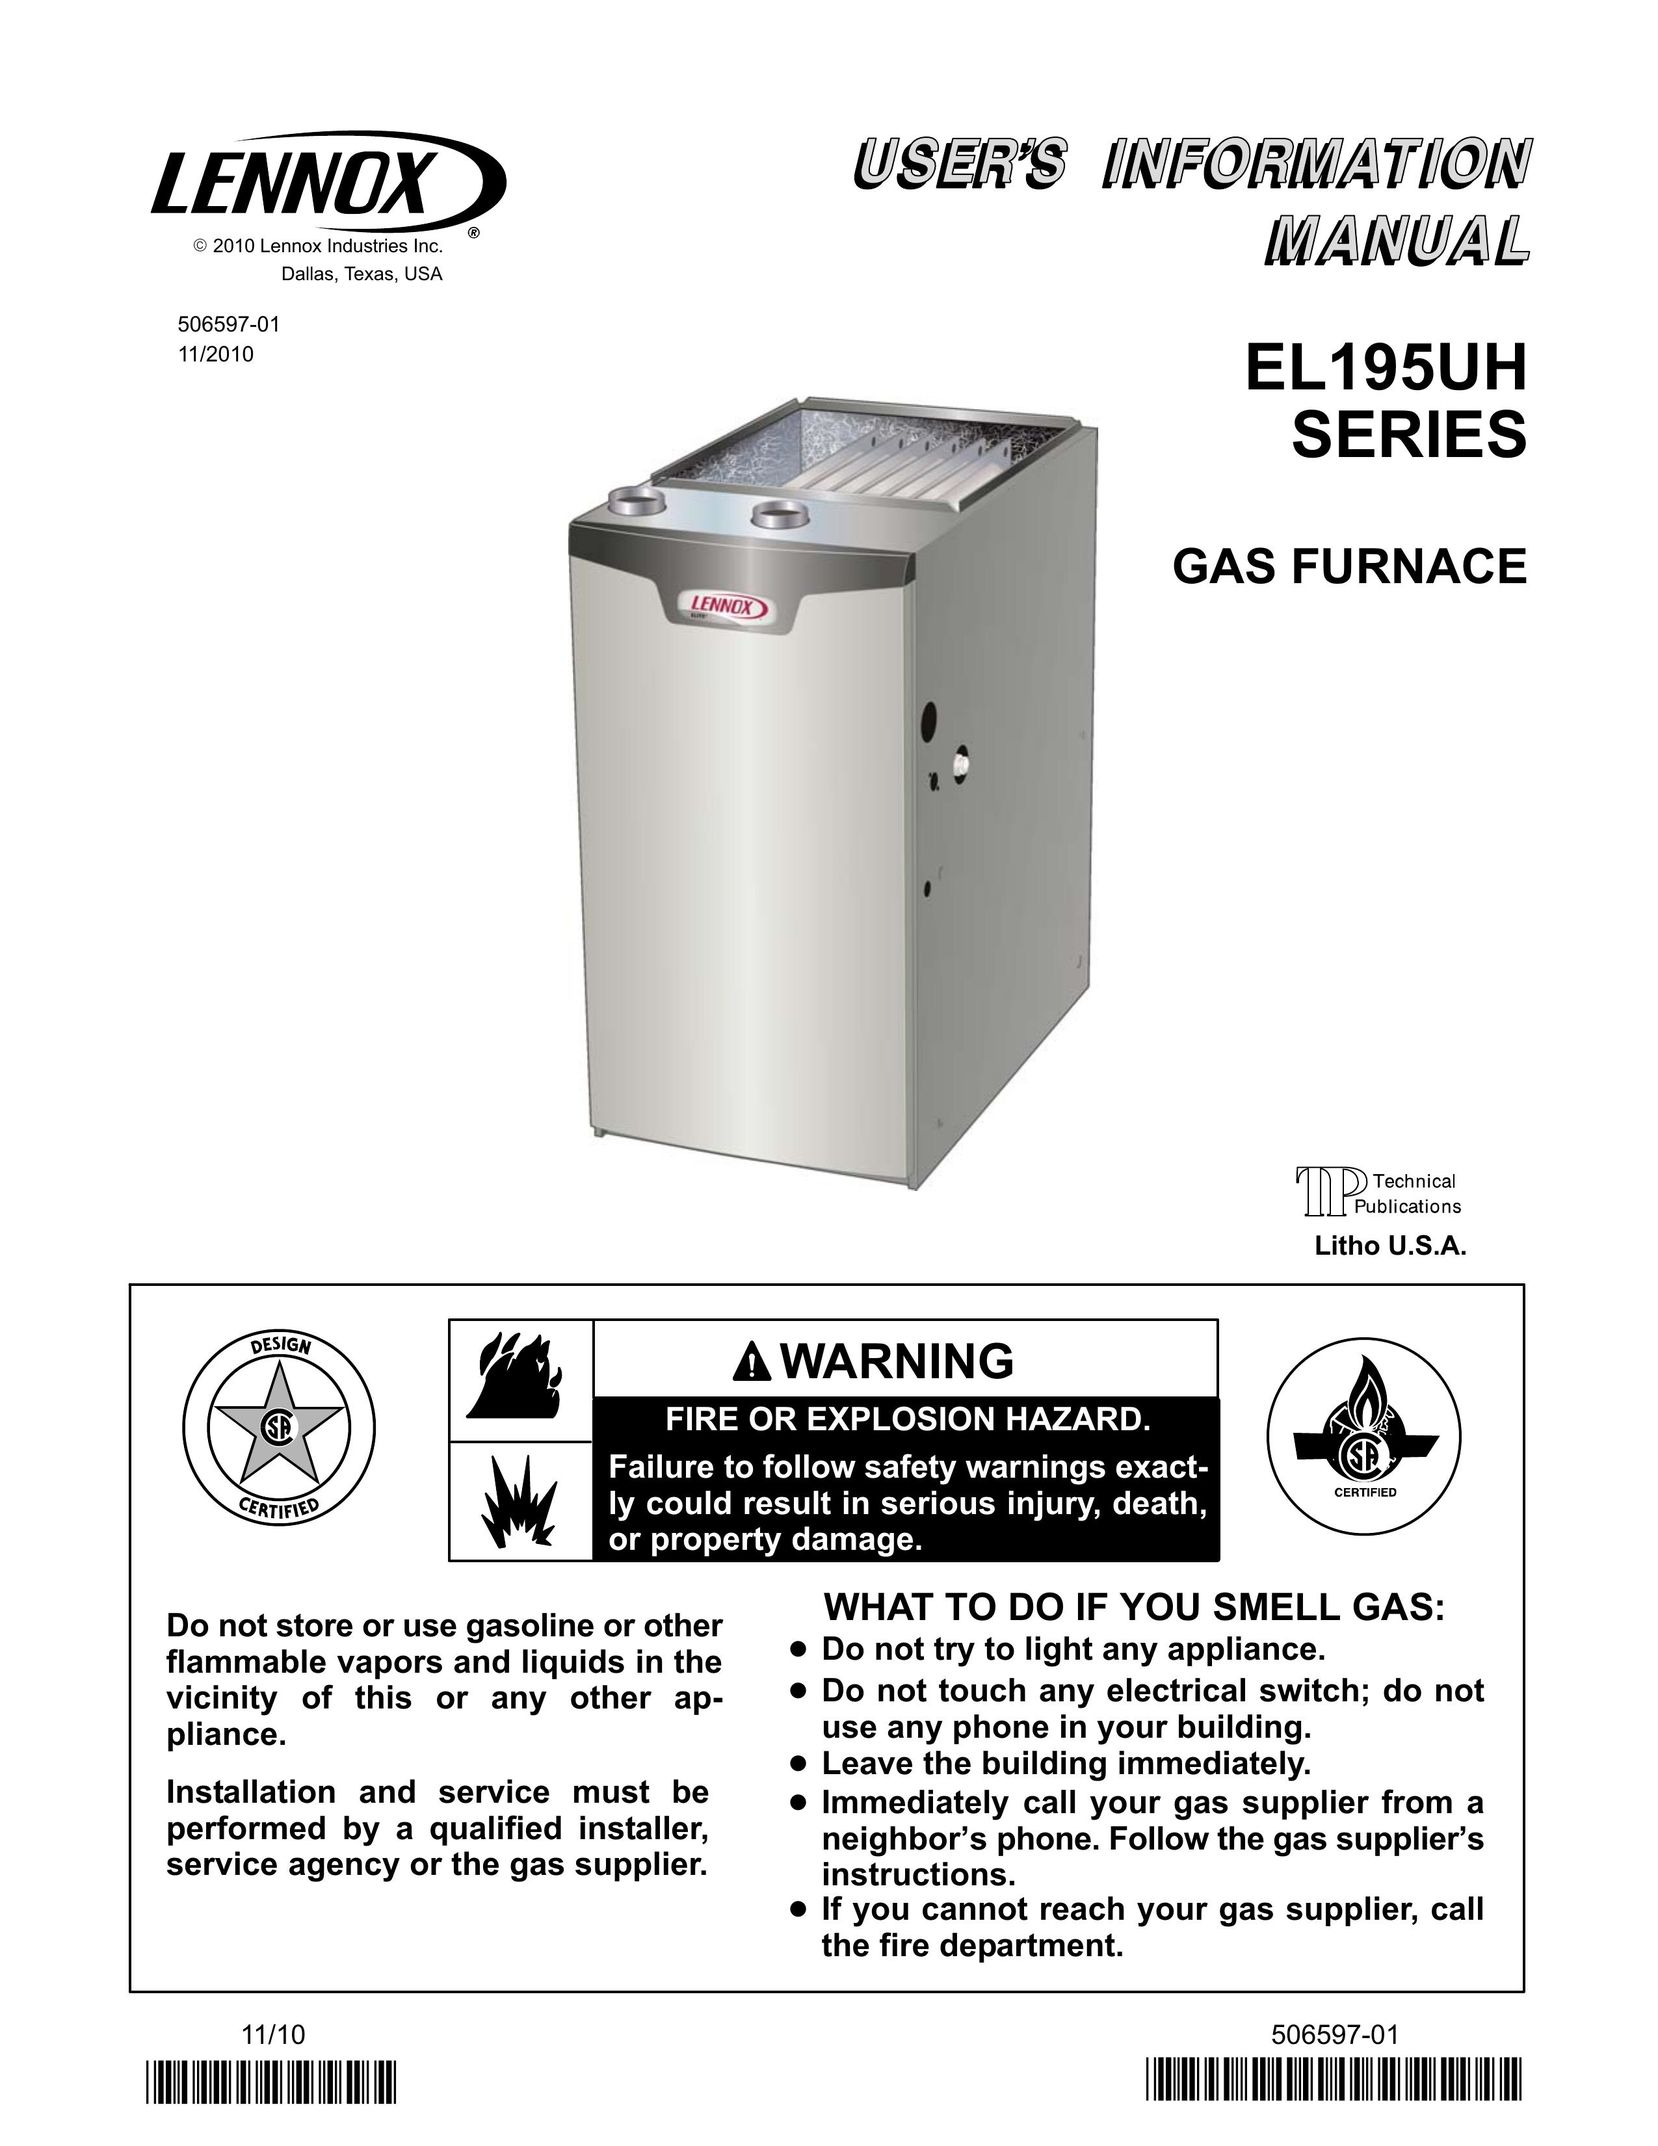 Lenox EL195UH SERIES Furnace User Manual